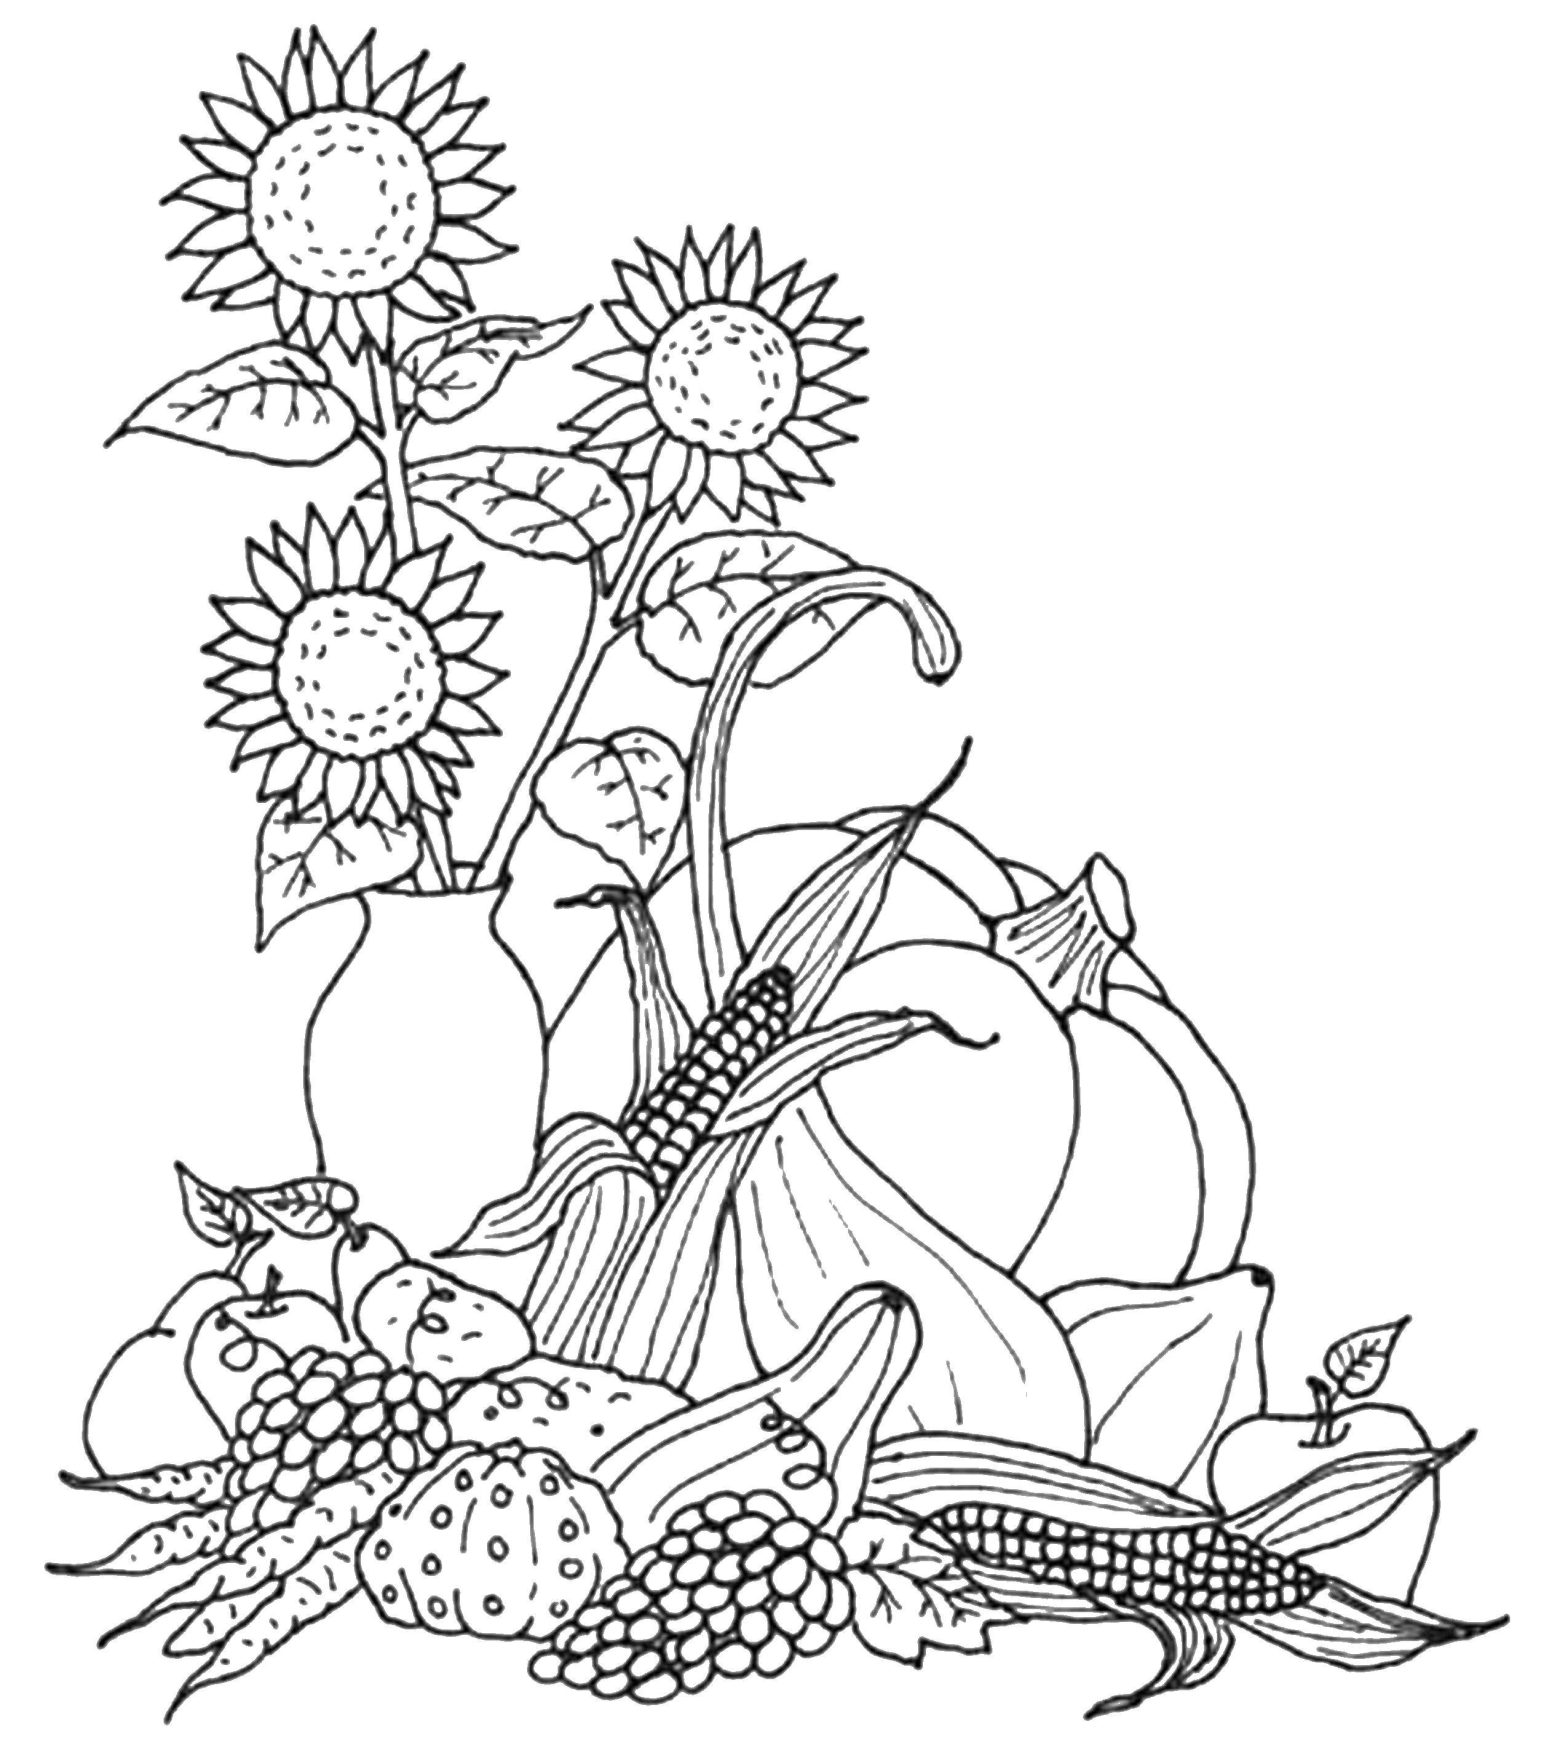 Раскраска подсолнухов и осенних листьев для детей (осень, подсолнухи, урожай)